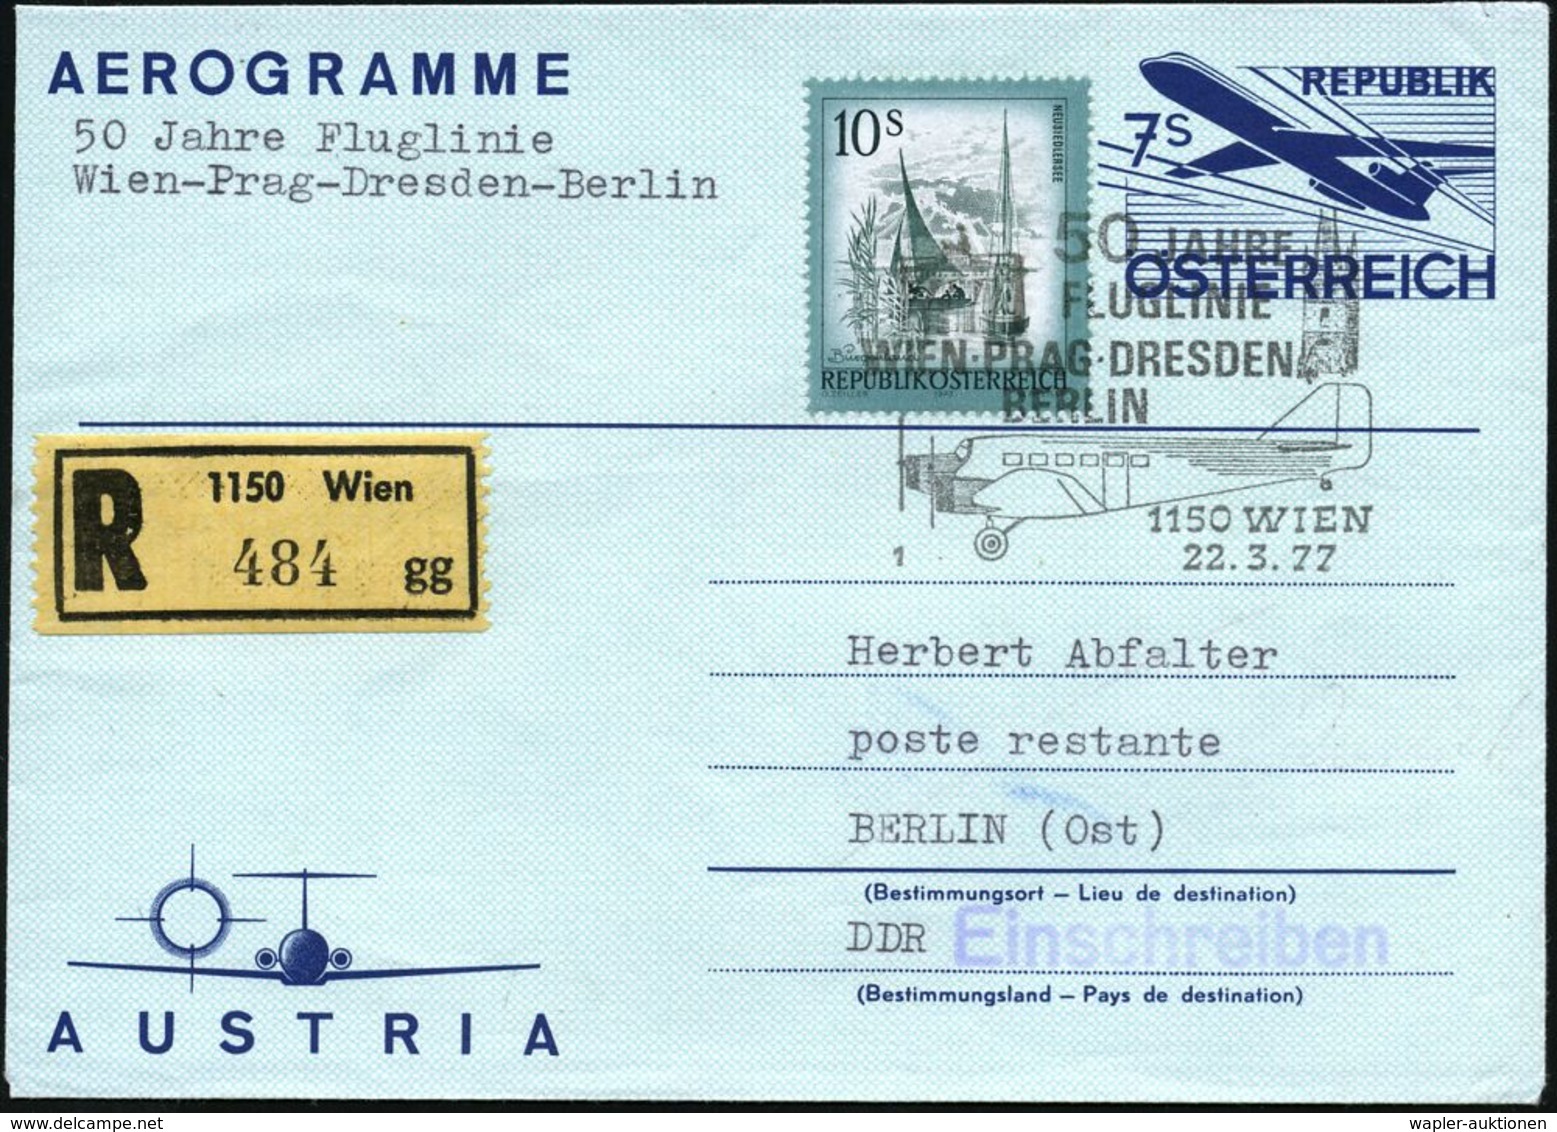 ÖSTERREICH 1977 (22.3.) 7 S. Aerogramm + 10 S. Dauerserie, SSt: 1150 WIEN/1/50 JAHRE/FLUGLINIE/WIEN-PRAG-DRESDEN/ BERLIN - Airplanes